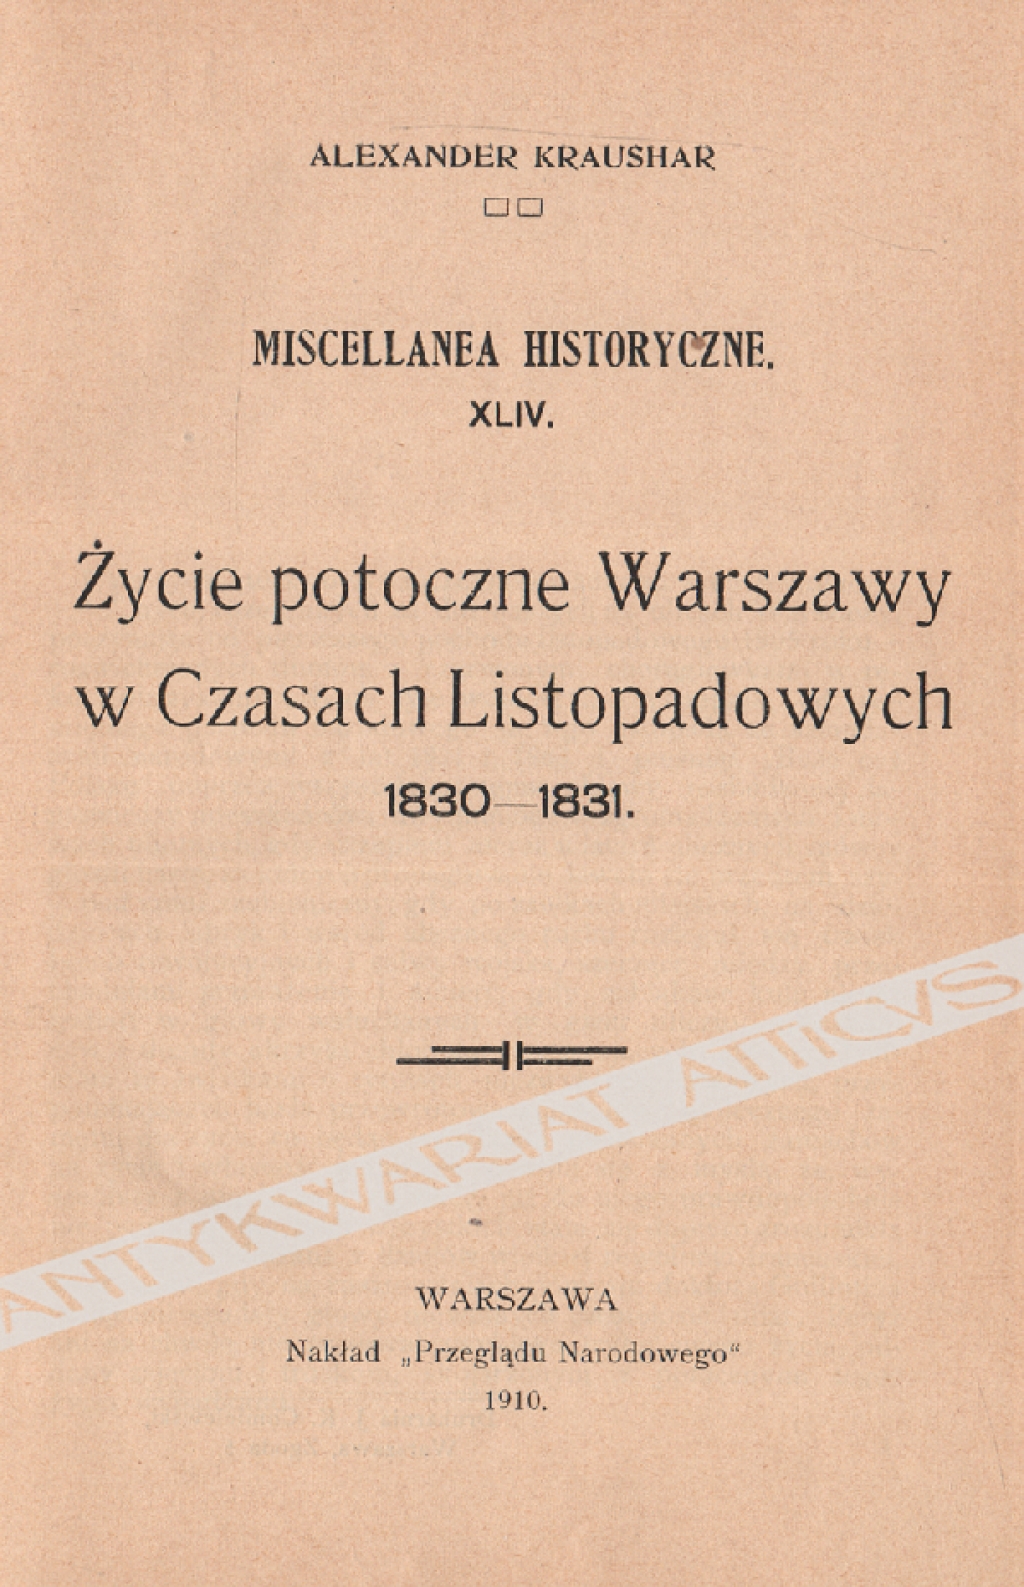 Życie potoczne Warszawy w Czasach Listopadowych 1830-1831